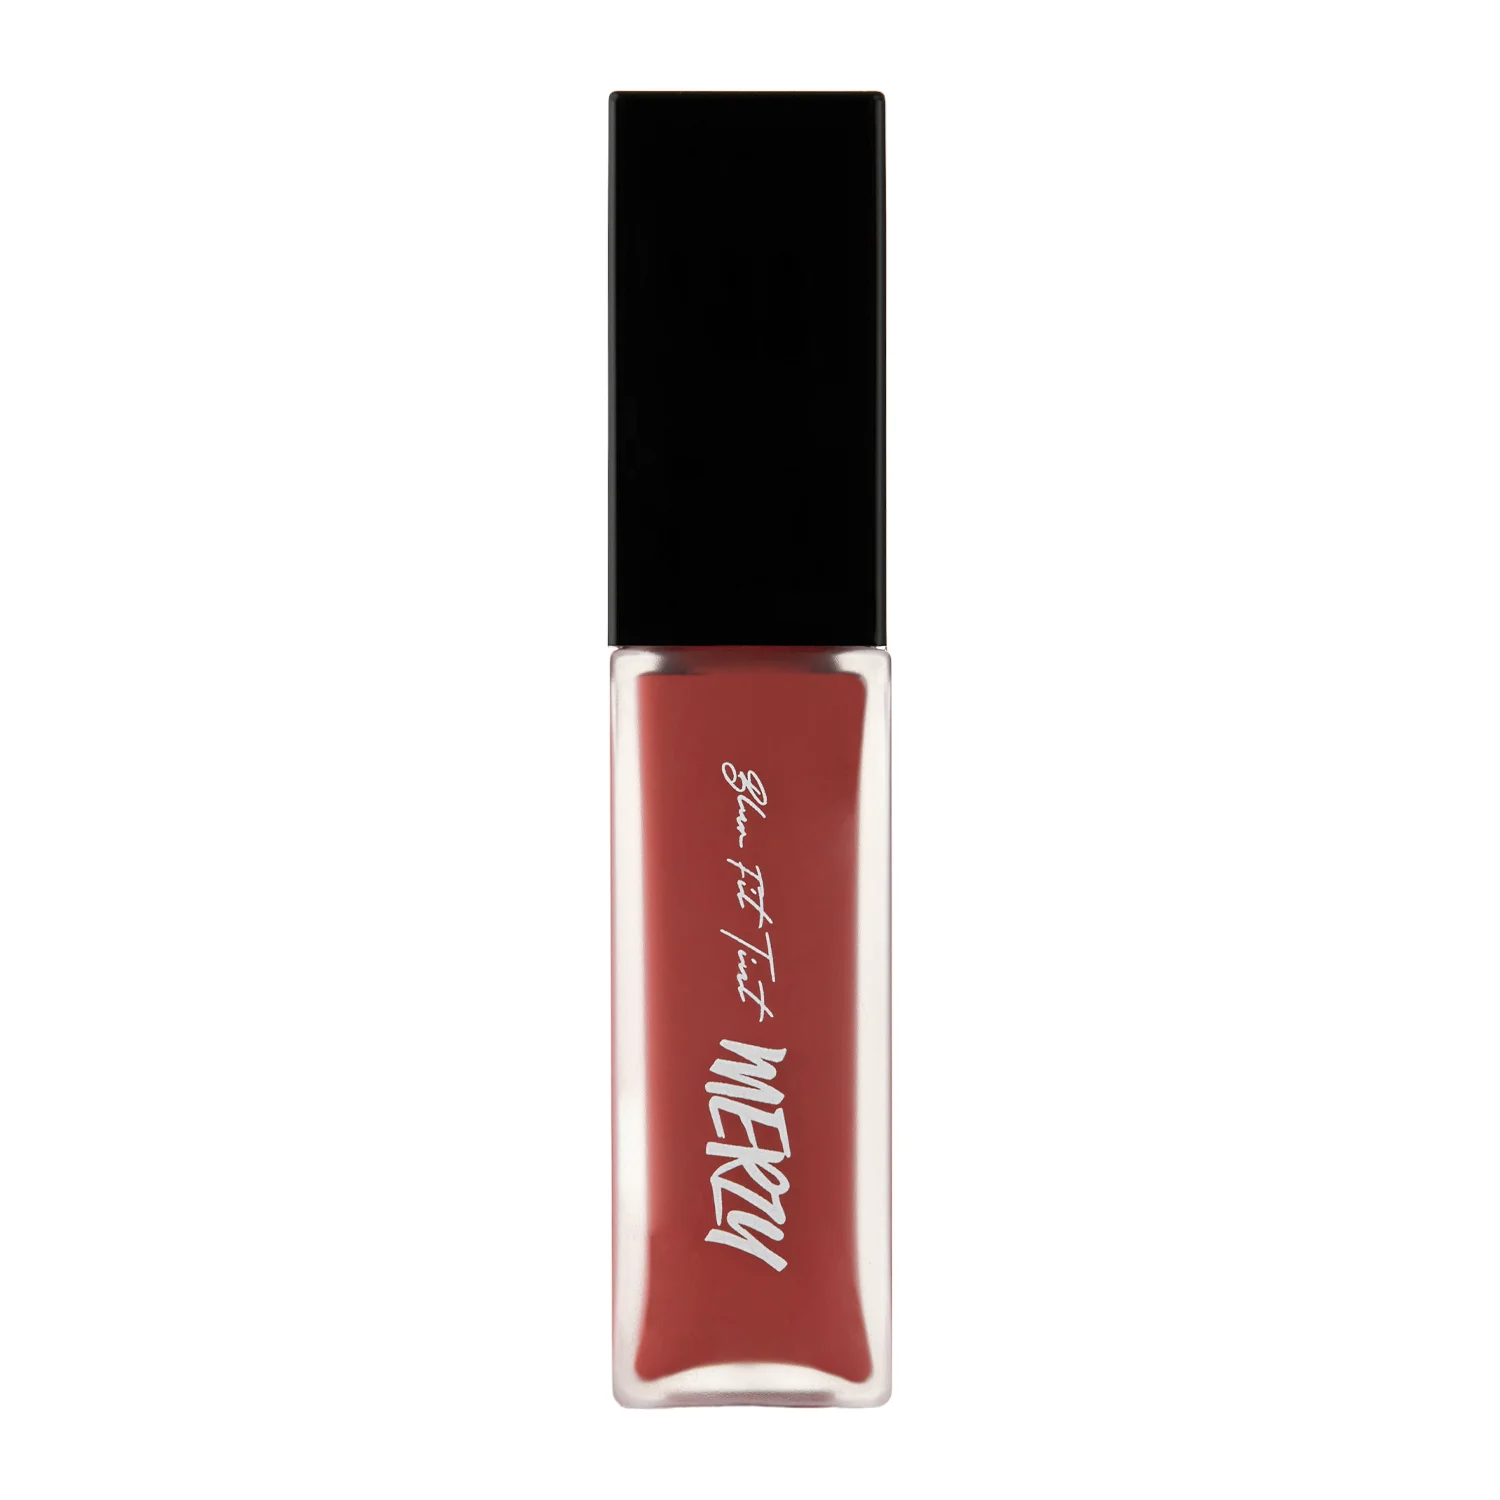 MERZY - Blur Fit Tint - BT7 Red Sensation - Matný tint na pery - 6 g